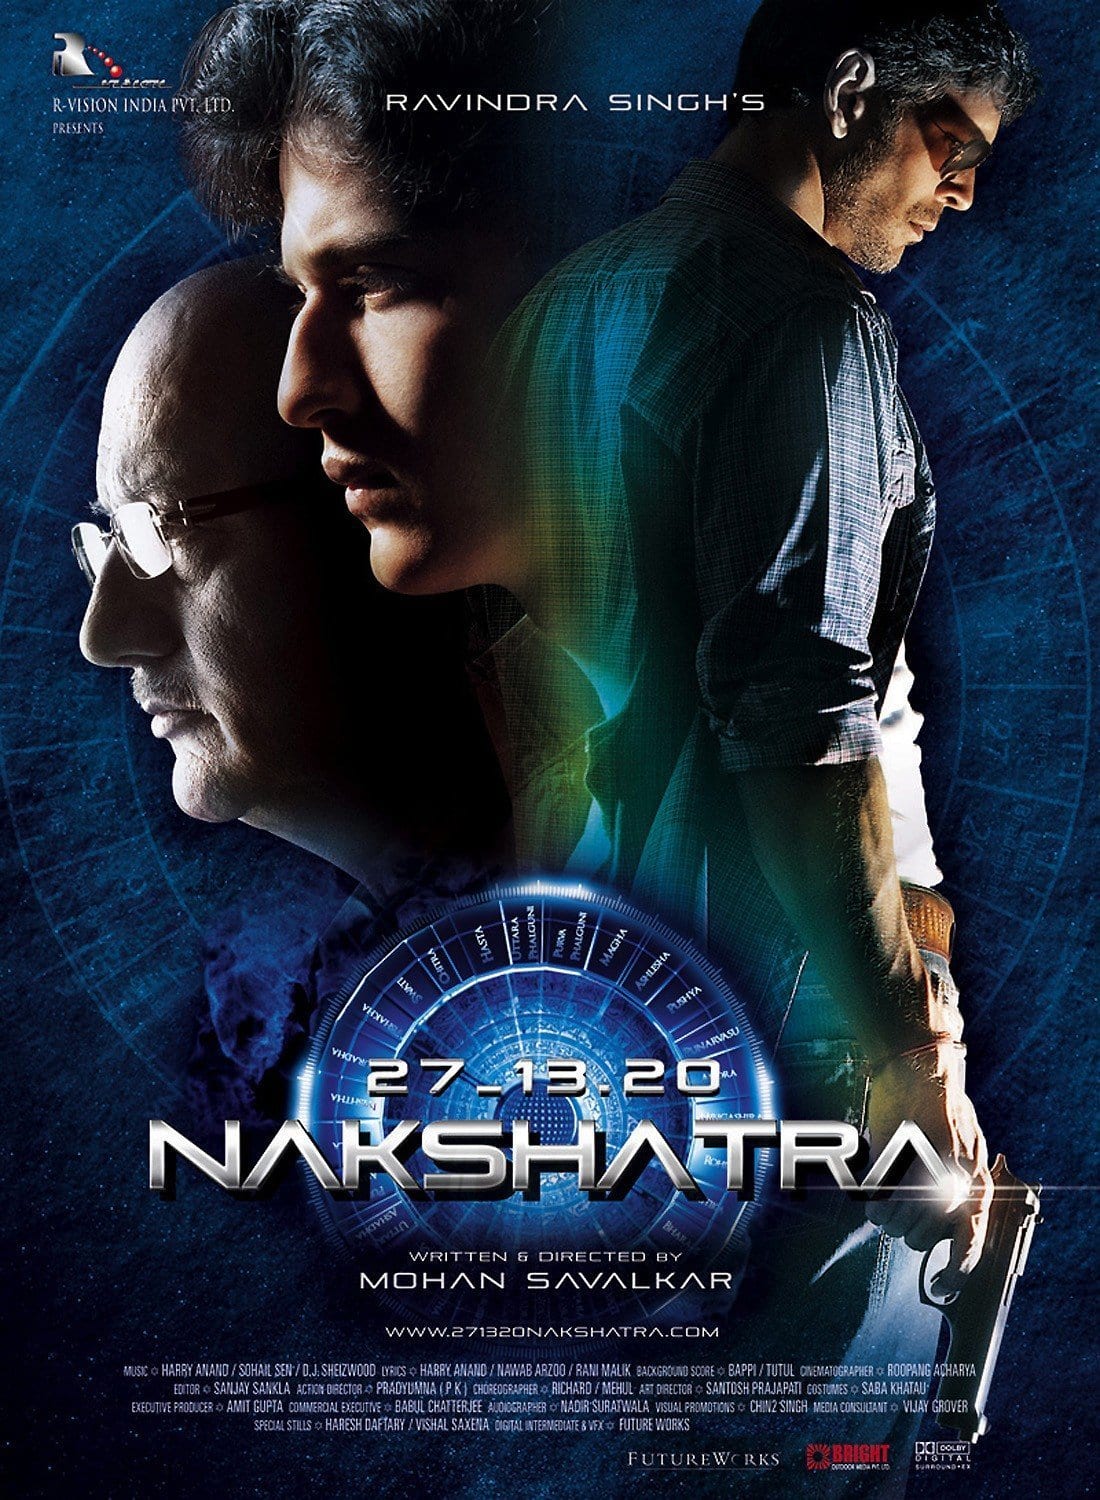 Poster for the movie "Nakshatra"